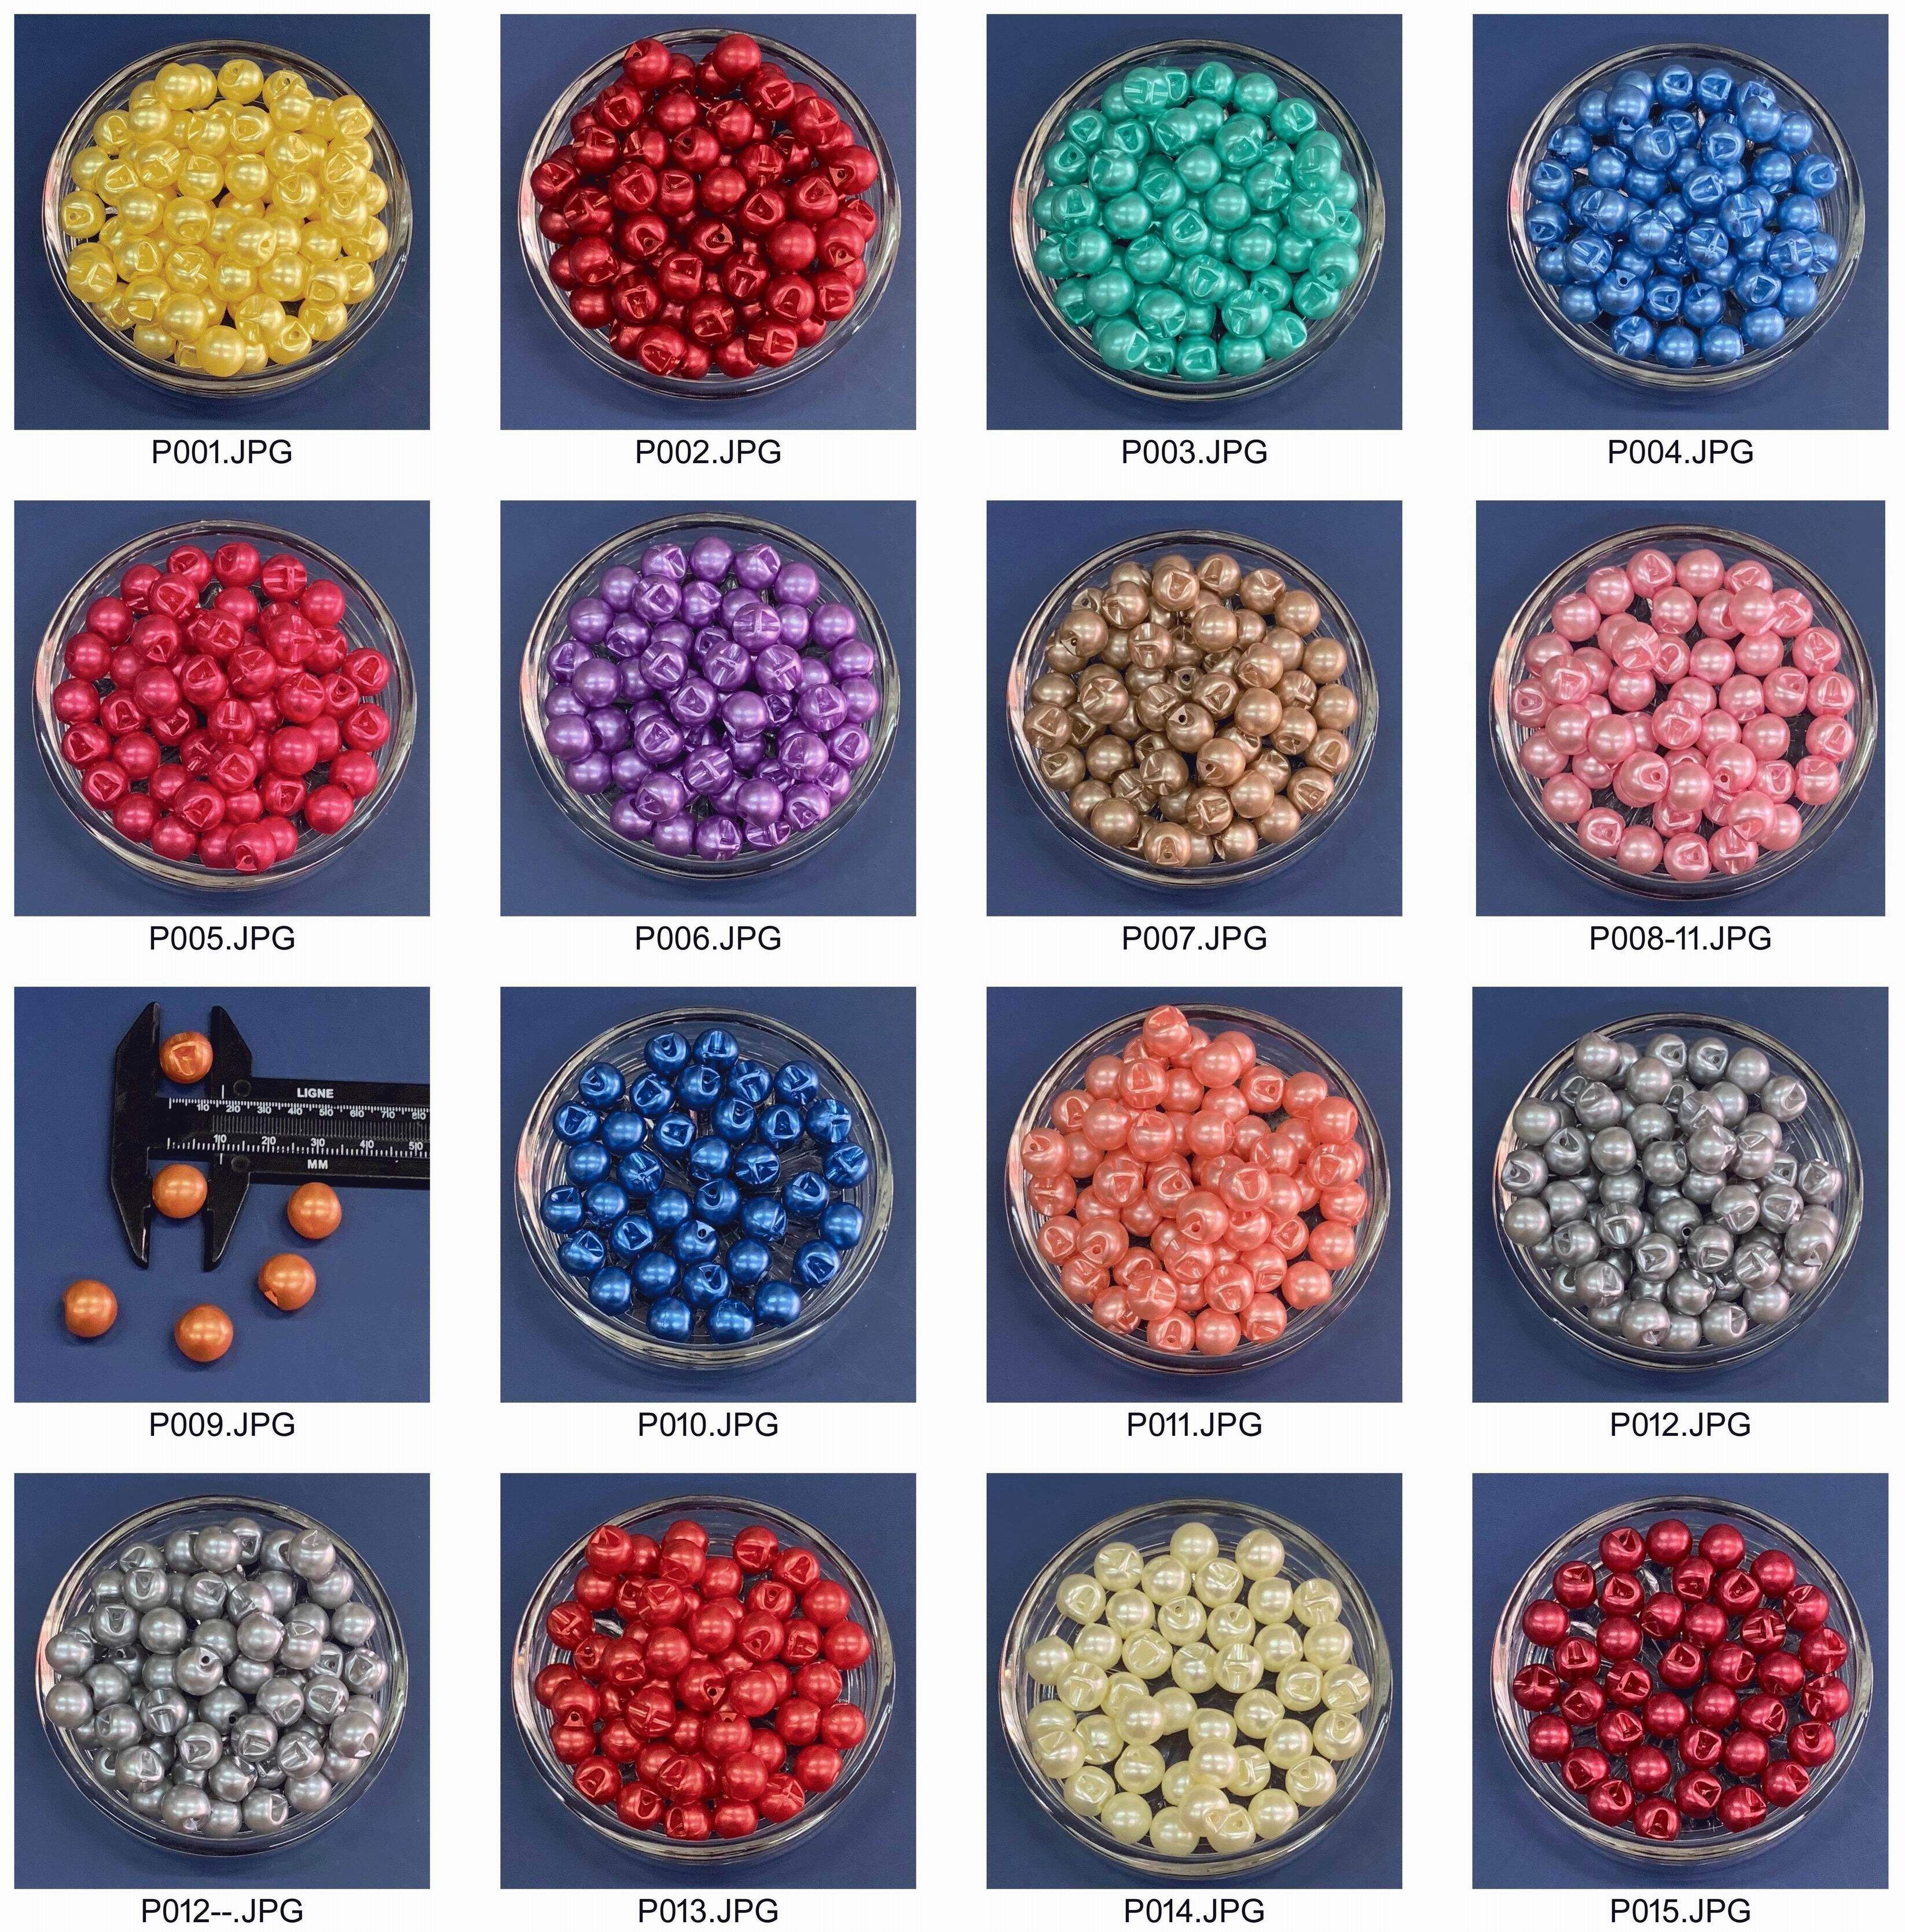 12เม็ด กระดุมมุกขนาด 10.5-11mm Pearl Buttons มี17สี กระดุมแฟชั่น กระดุมเสื้อ เครื่องประดับติดเสื้อและอื่นๆ เครื่องตกแต่งกระเป๋า ของขวัญต่างๆ อุปกรณ์งานฝีมือ DIY งานศิลปะ งานประดิษฐ์ อุปกรณ์เครื่องแต่งกายให้สวยงาม